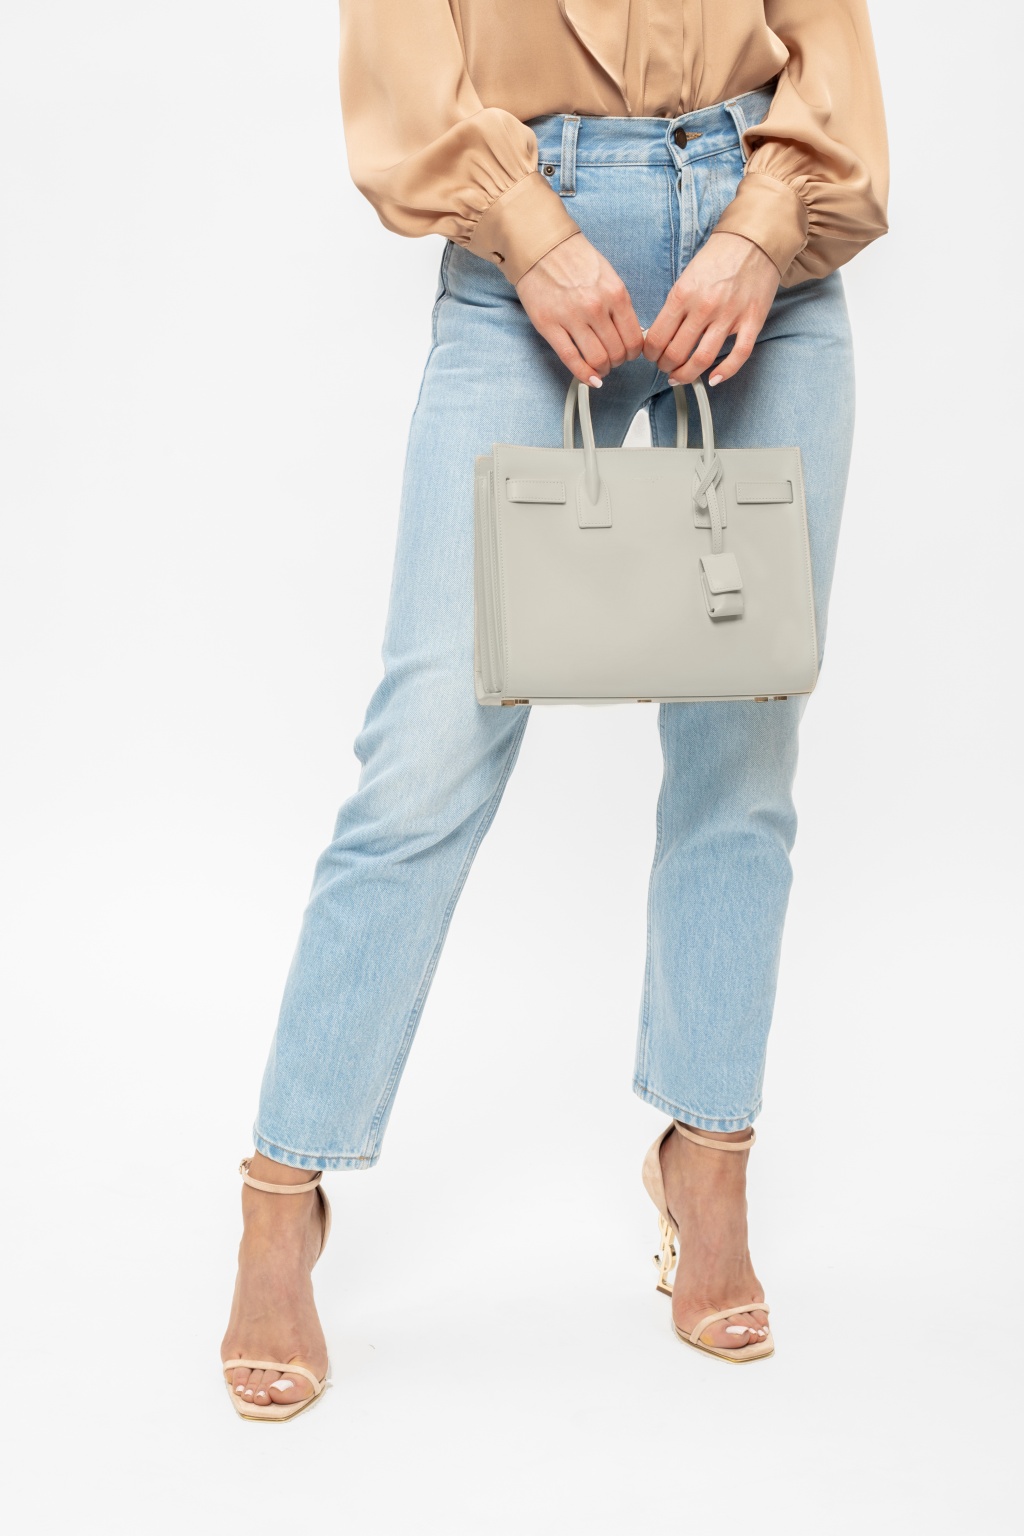 Saint Laurent 'Sac De Jour' shoulder bag, Women's Bags